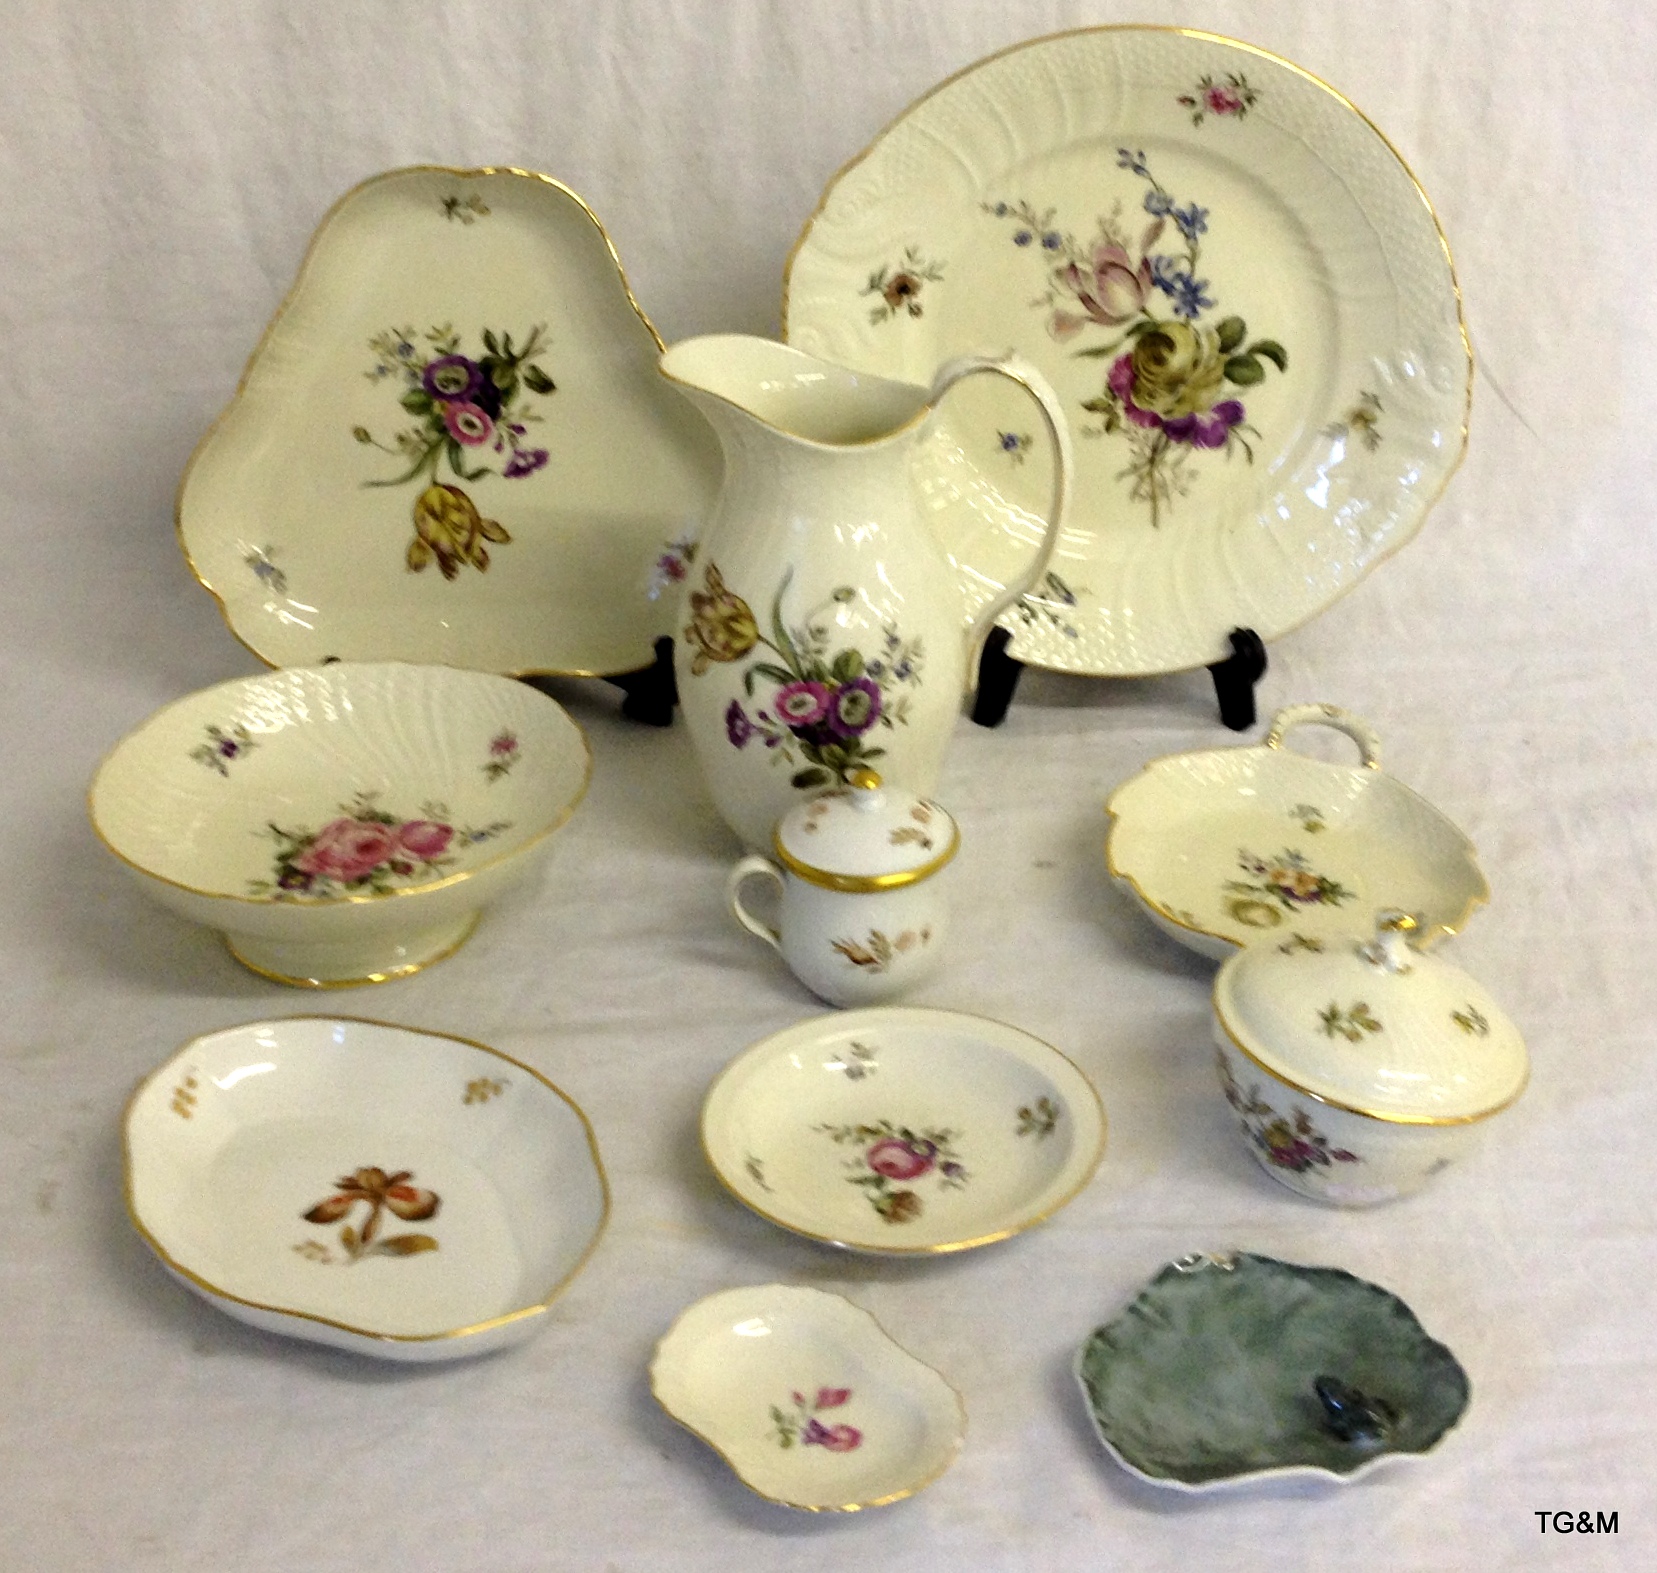 Ten pieces of Royal Copenhagen porcelain